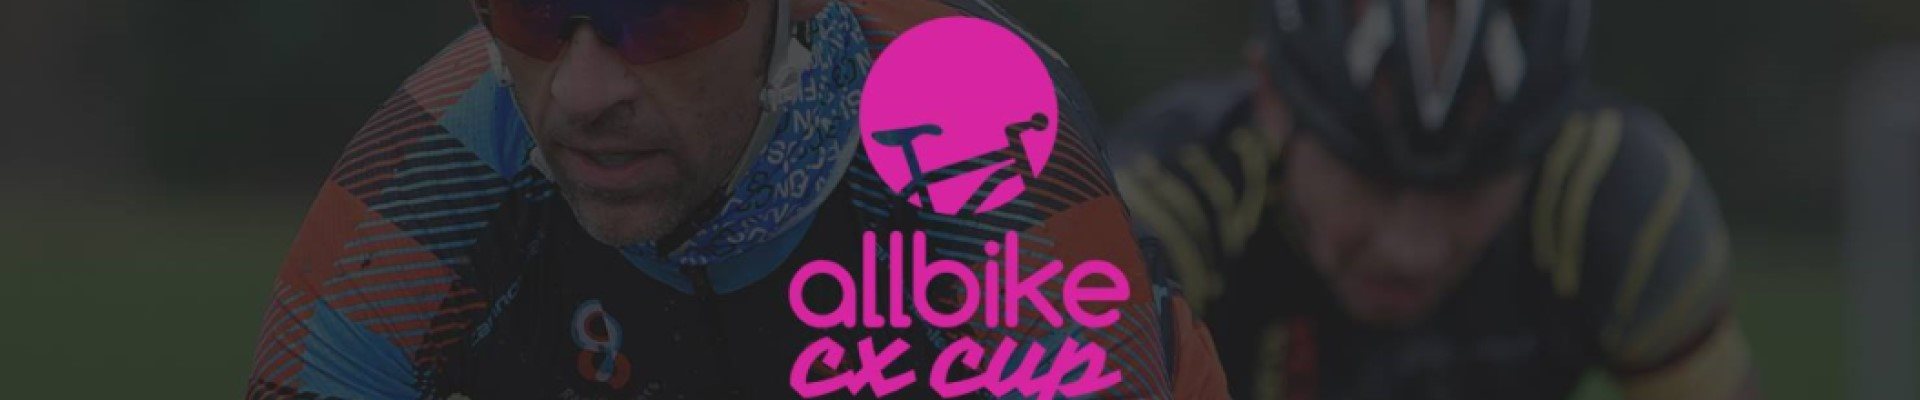 Allbike CX cup #1 Stoholm